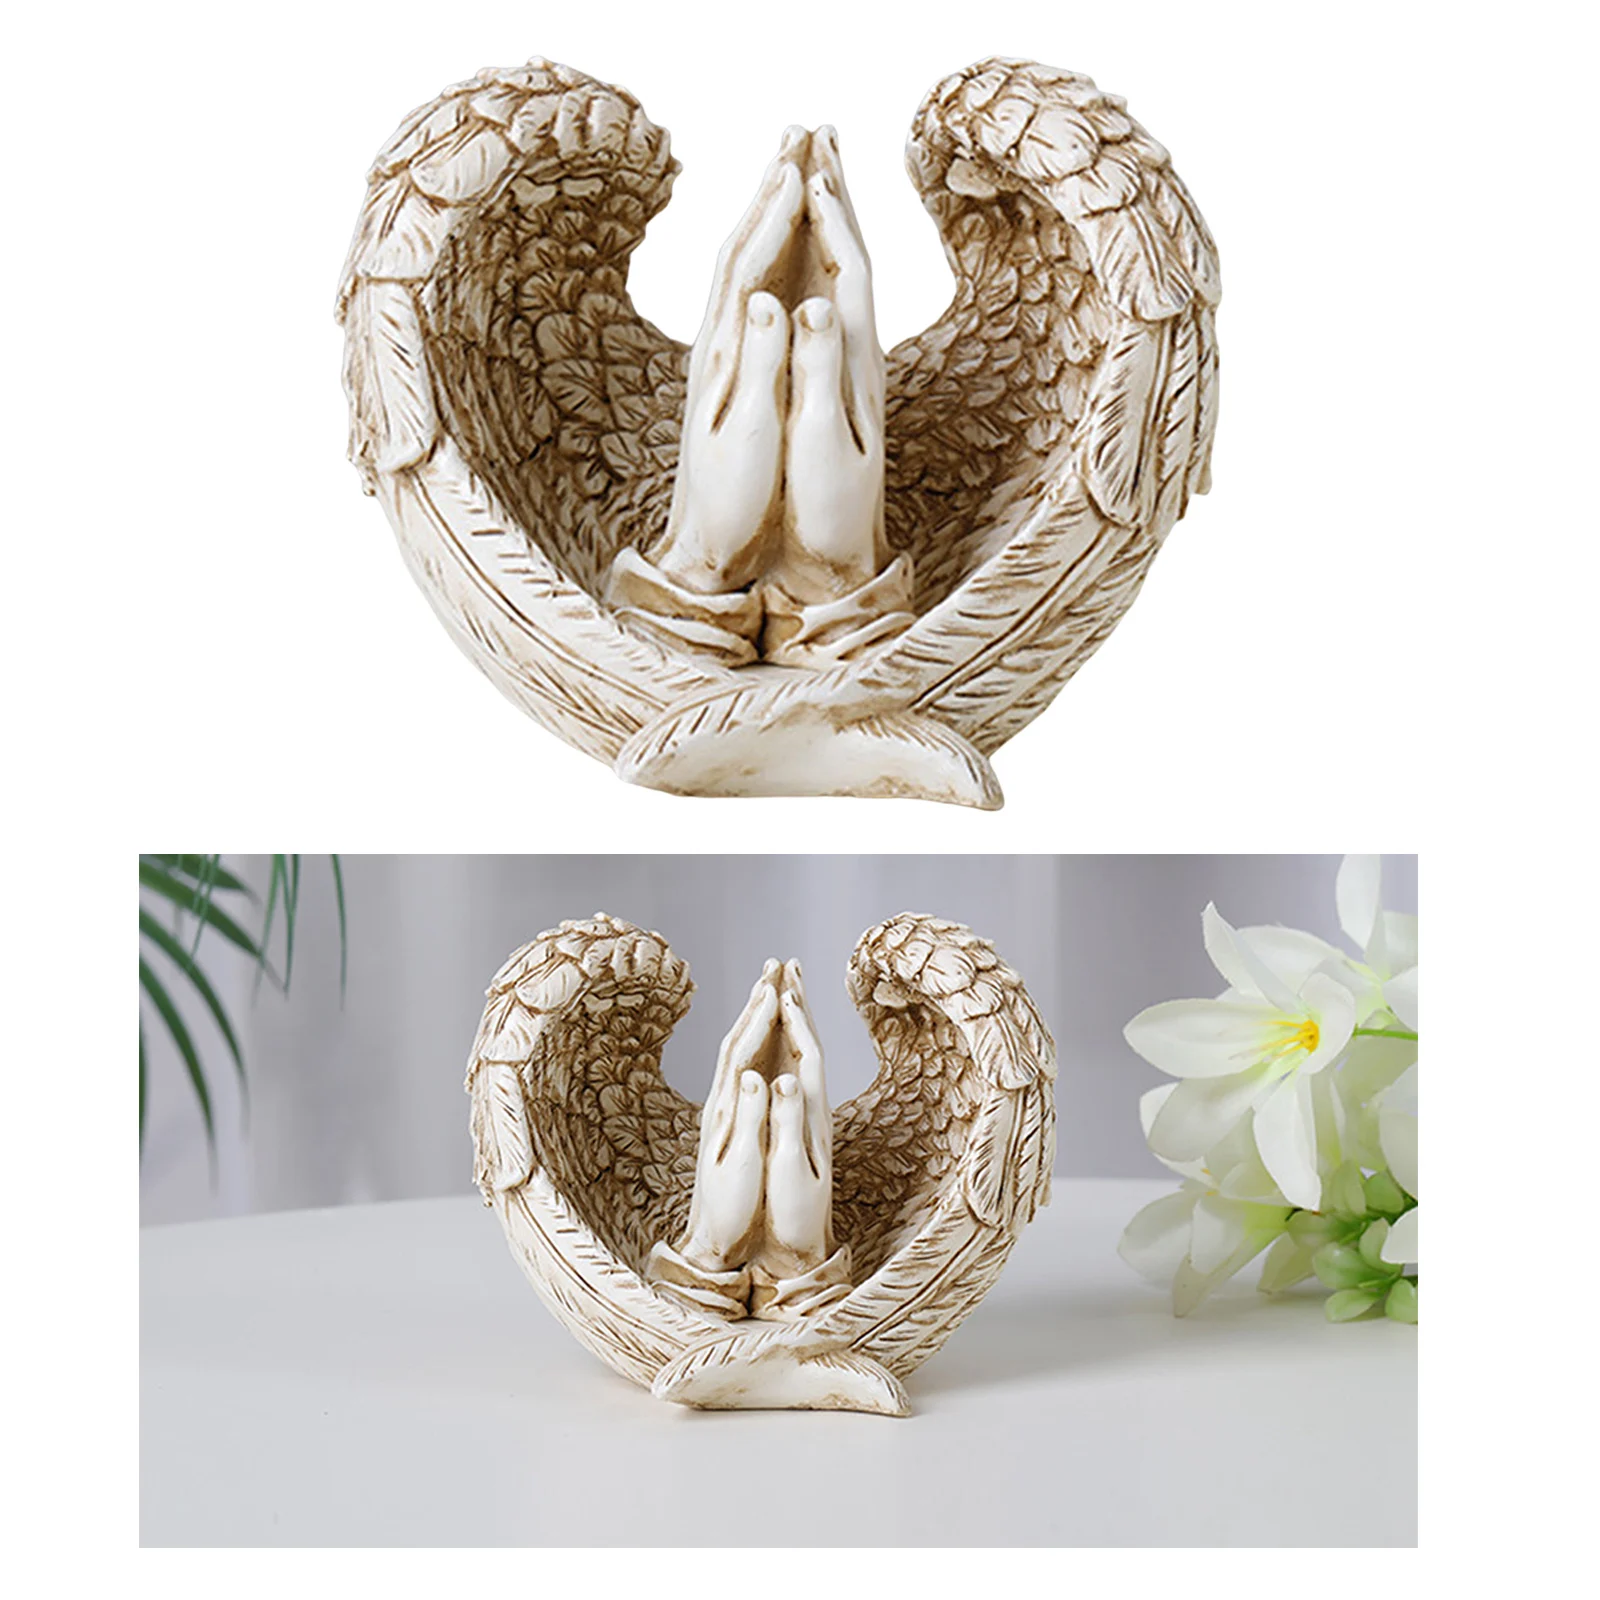 Angel Statue 3D Artwork Sculpture Angel Memorial Statue Indoor Home Desk Bedroom Decoration Ornament